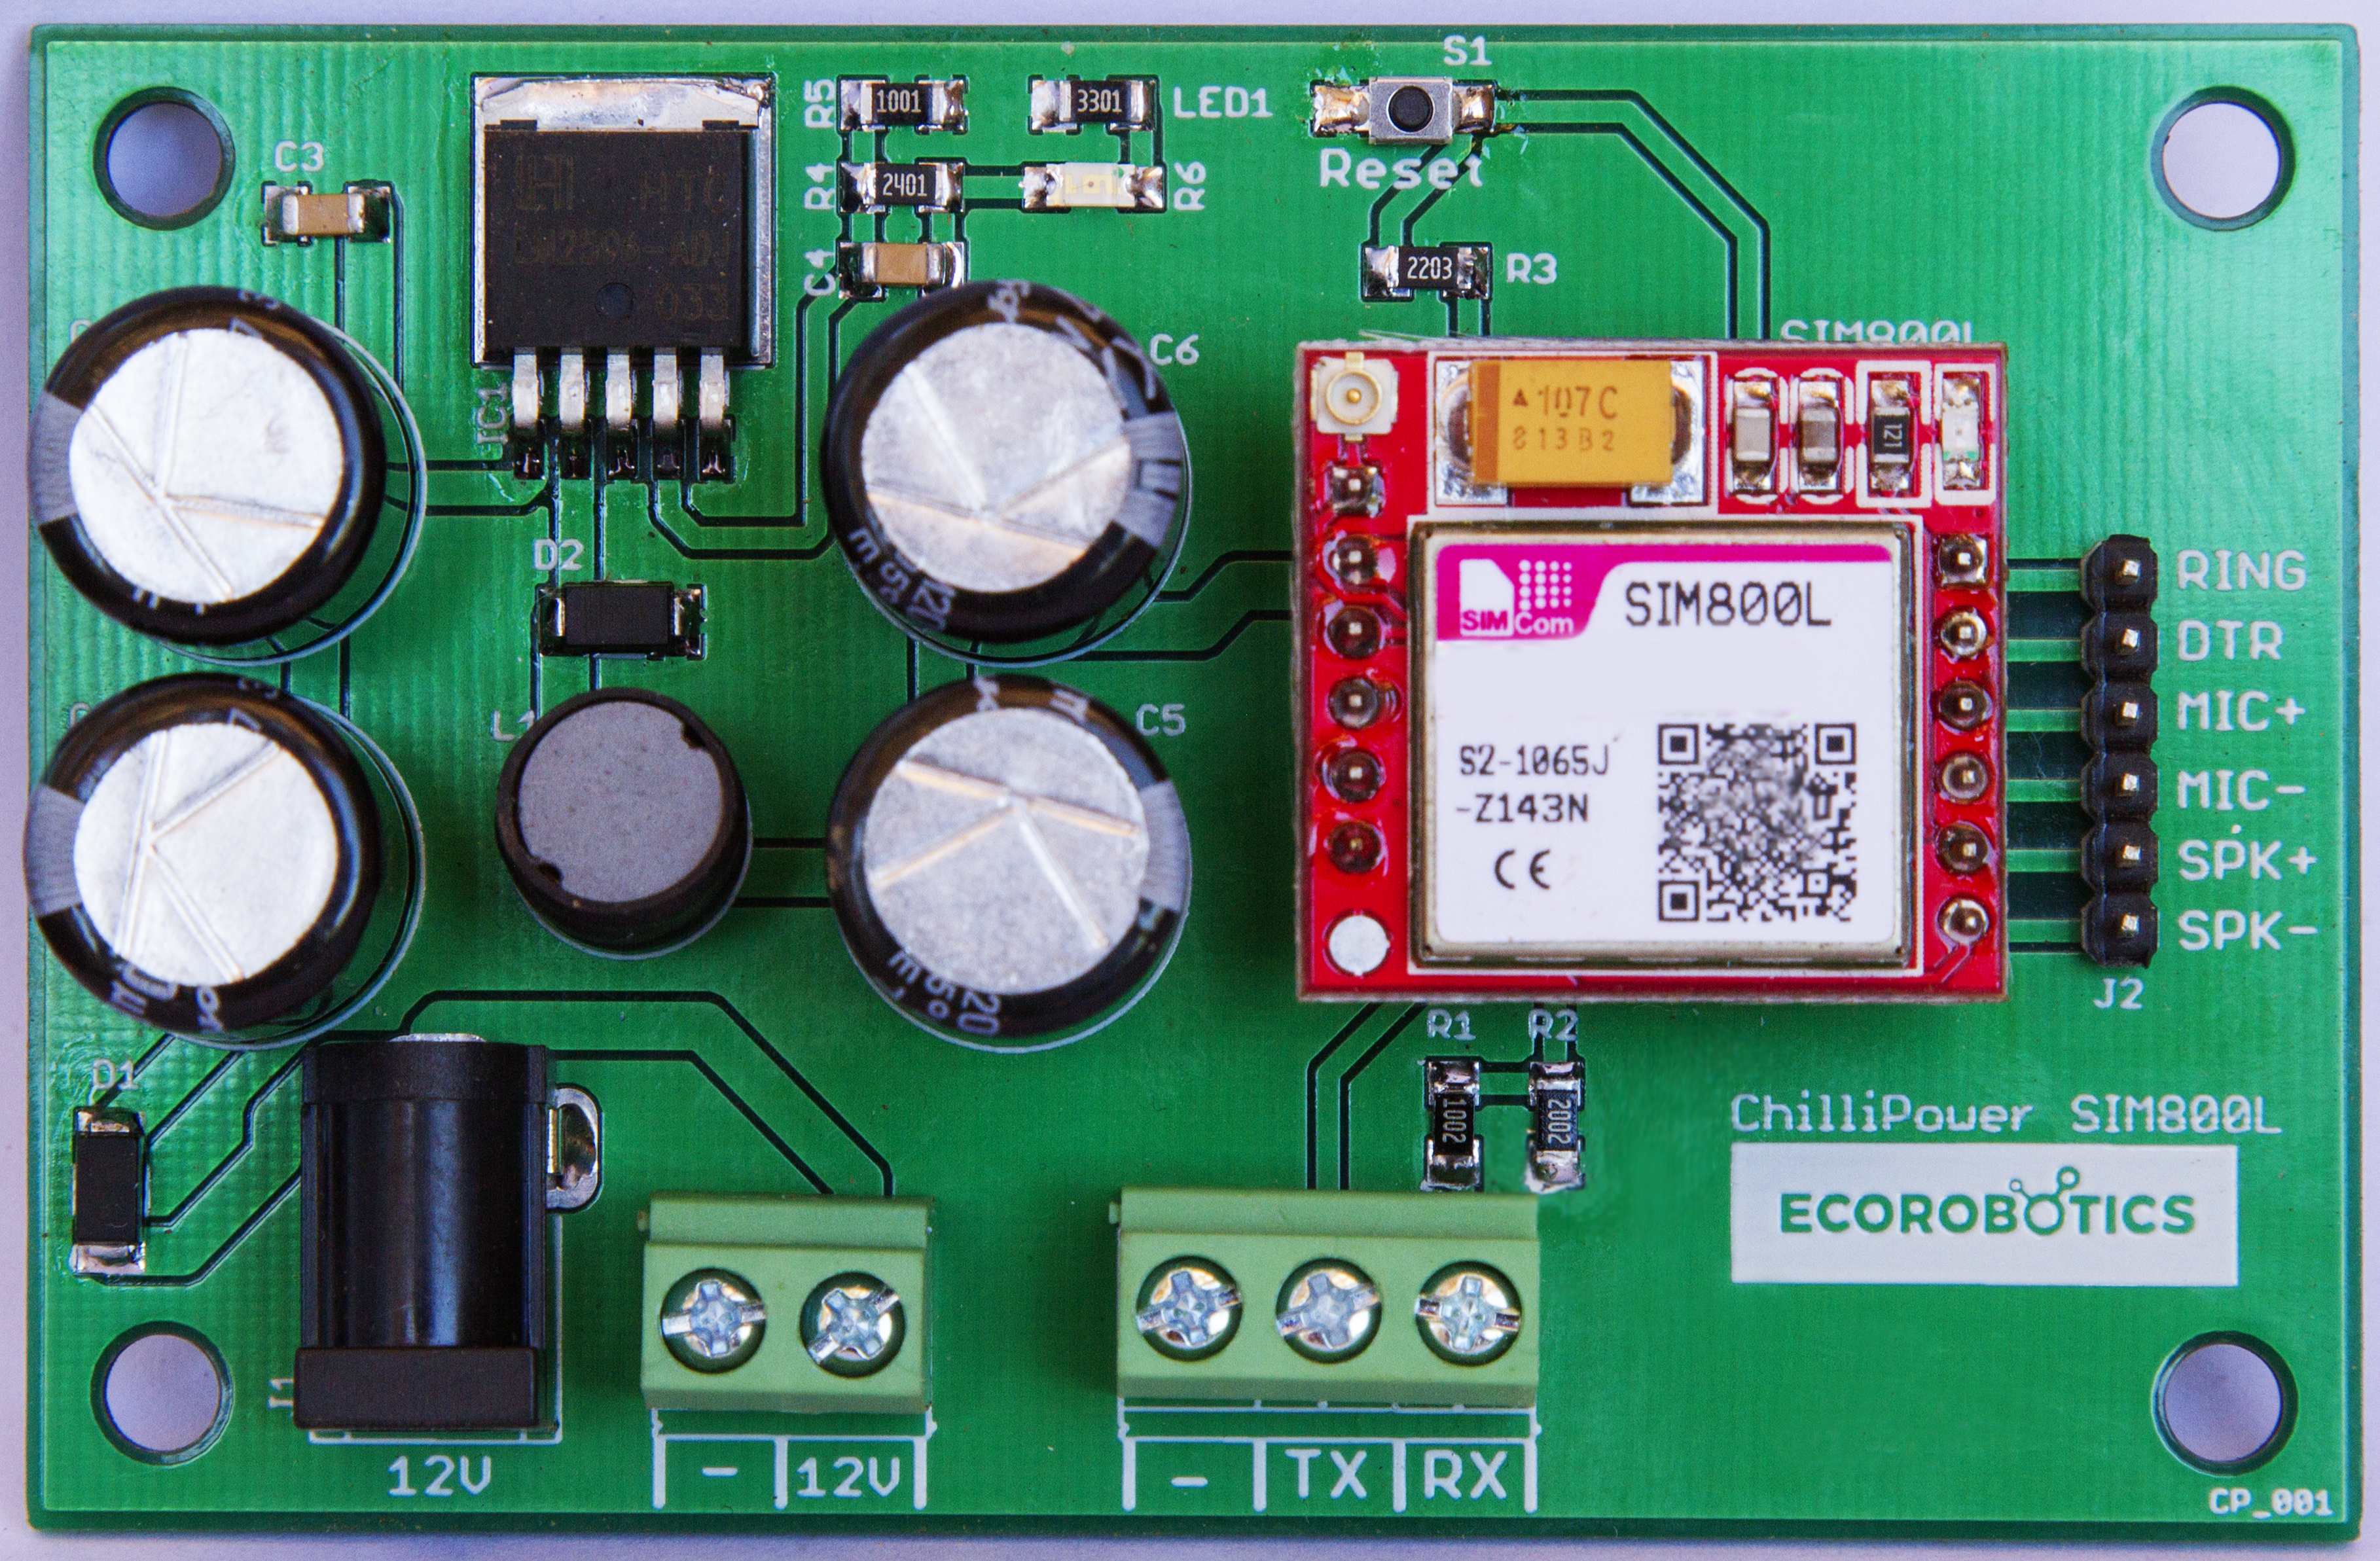 Keyestudio Breadboard Power Module+830-Hole Solderless Breadboard+65 Jumper  Wires for Arduino Experiment